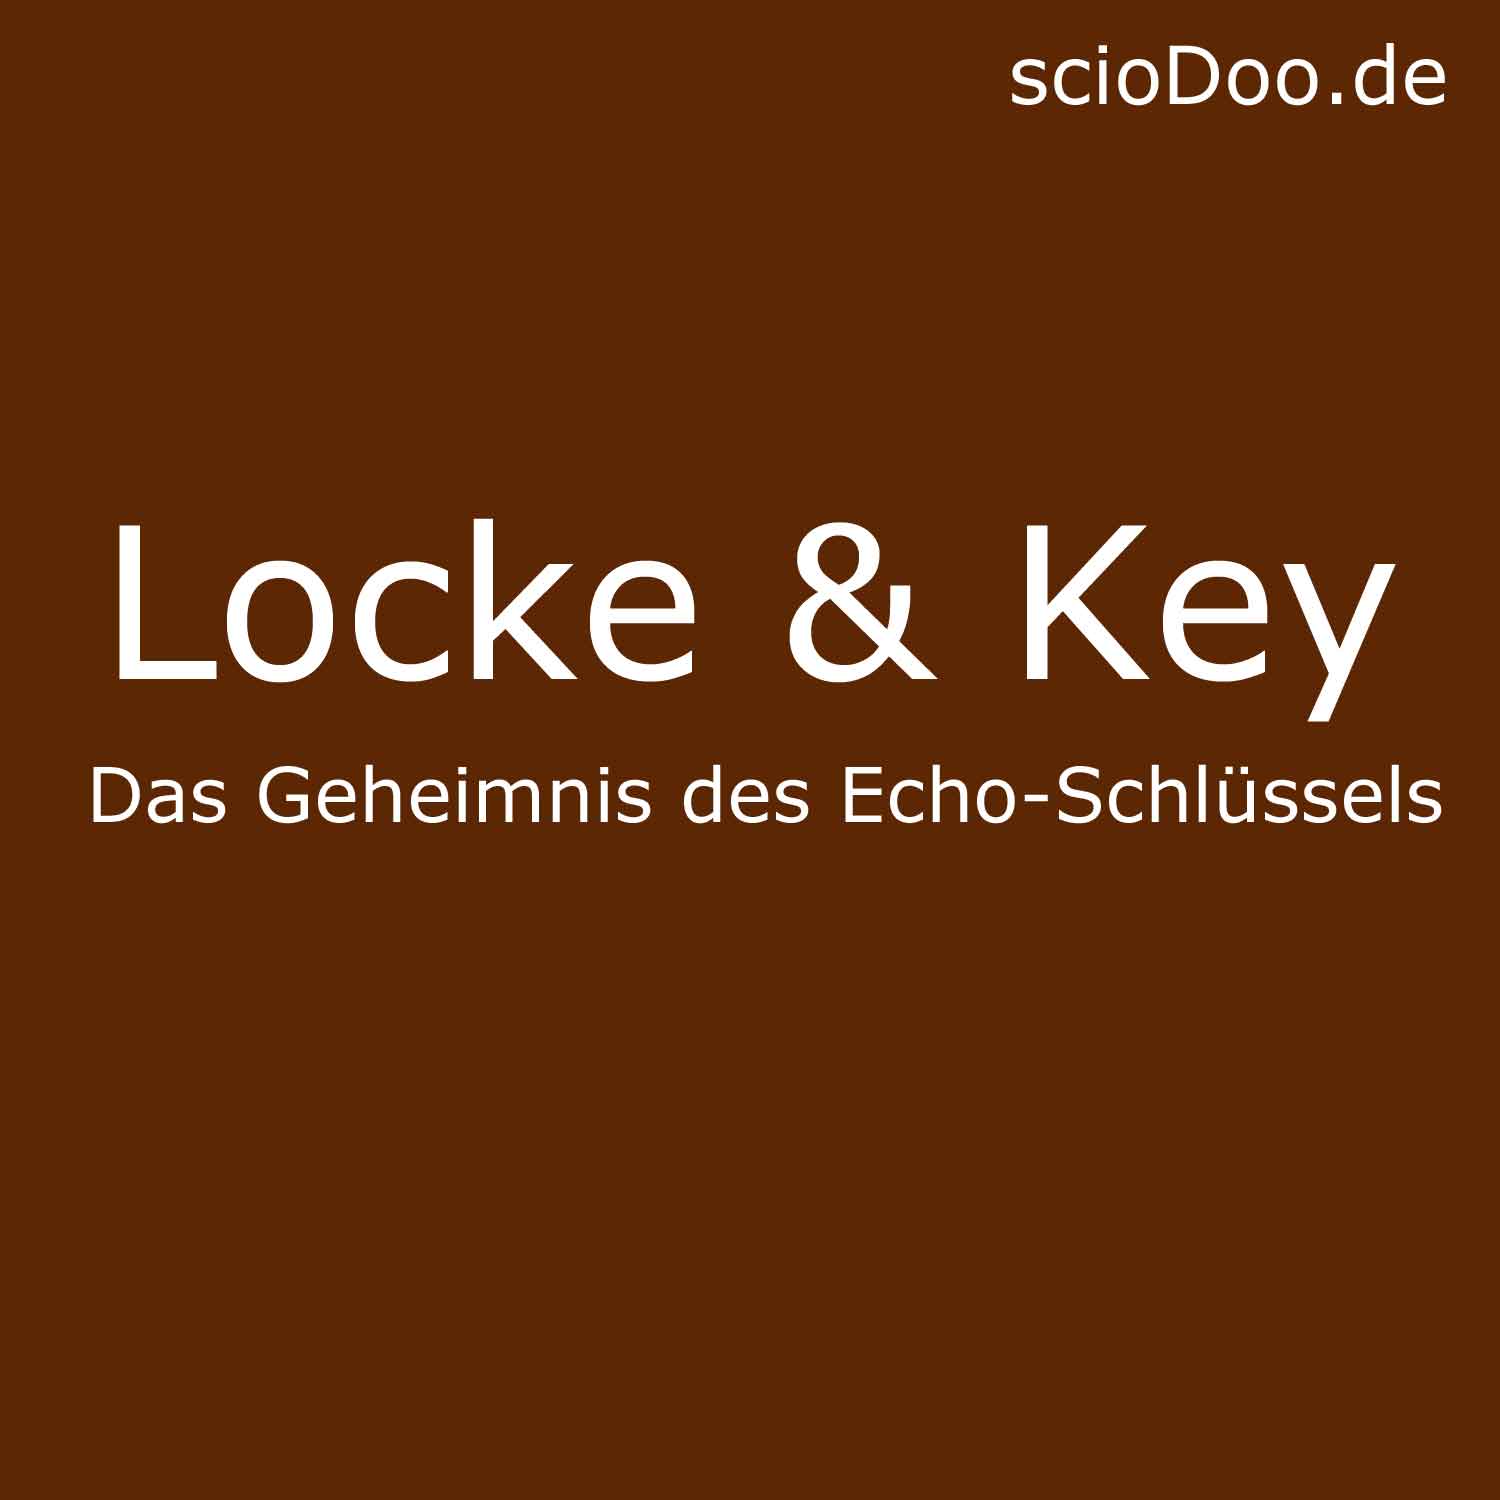 https://sciodoo.de/wp-content/uploads/2020/03/echoschl%C3%BCssel-locke-key.jpg